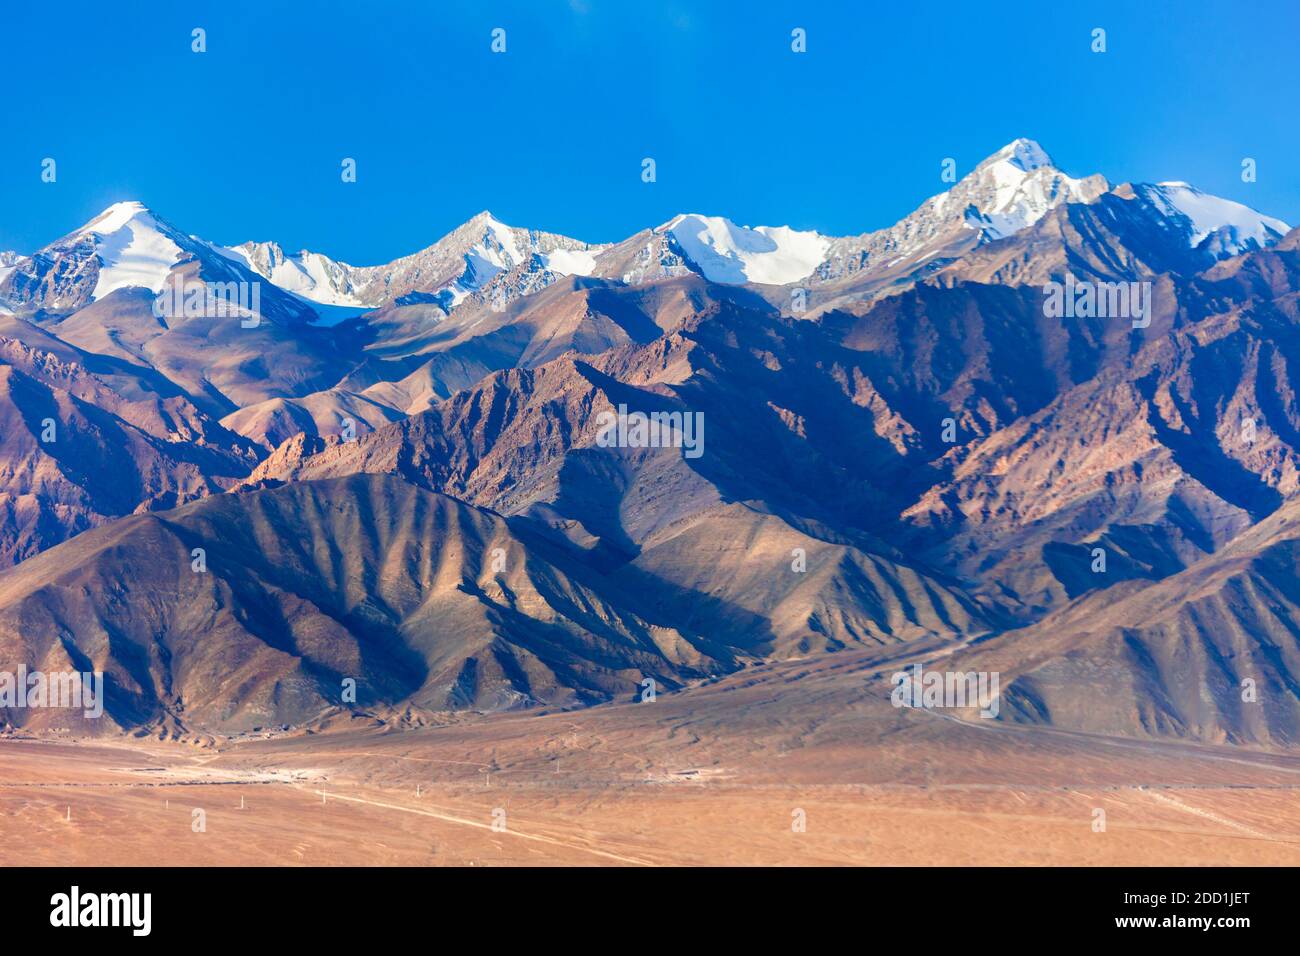 Stok Kangri est la plus haute montagne de la chaîne de Stok De l'Himalaya près de Leh dans la région du Ladakh de inde du nord Banque D'Images